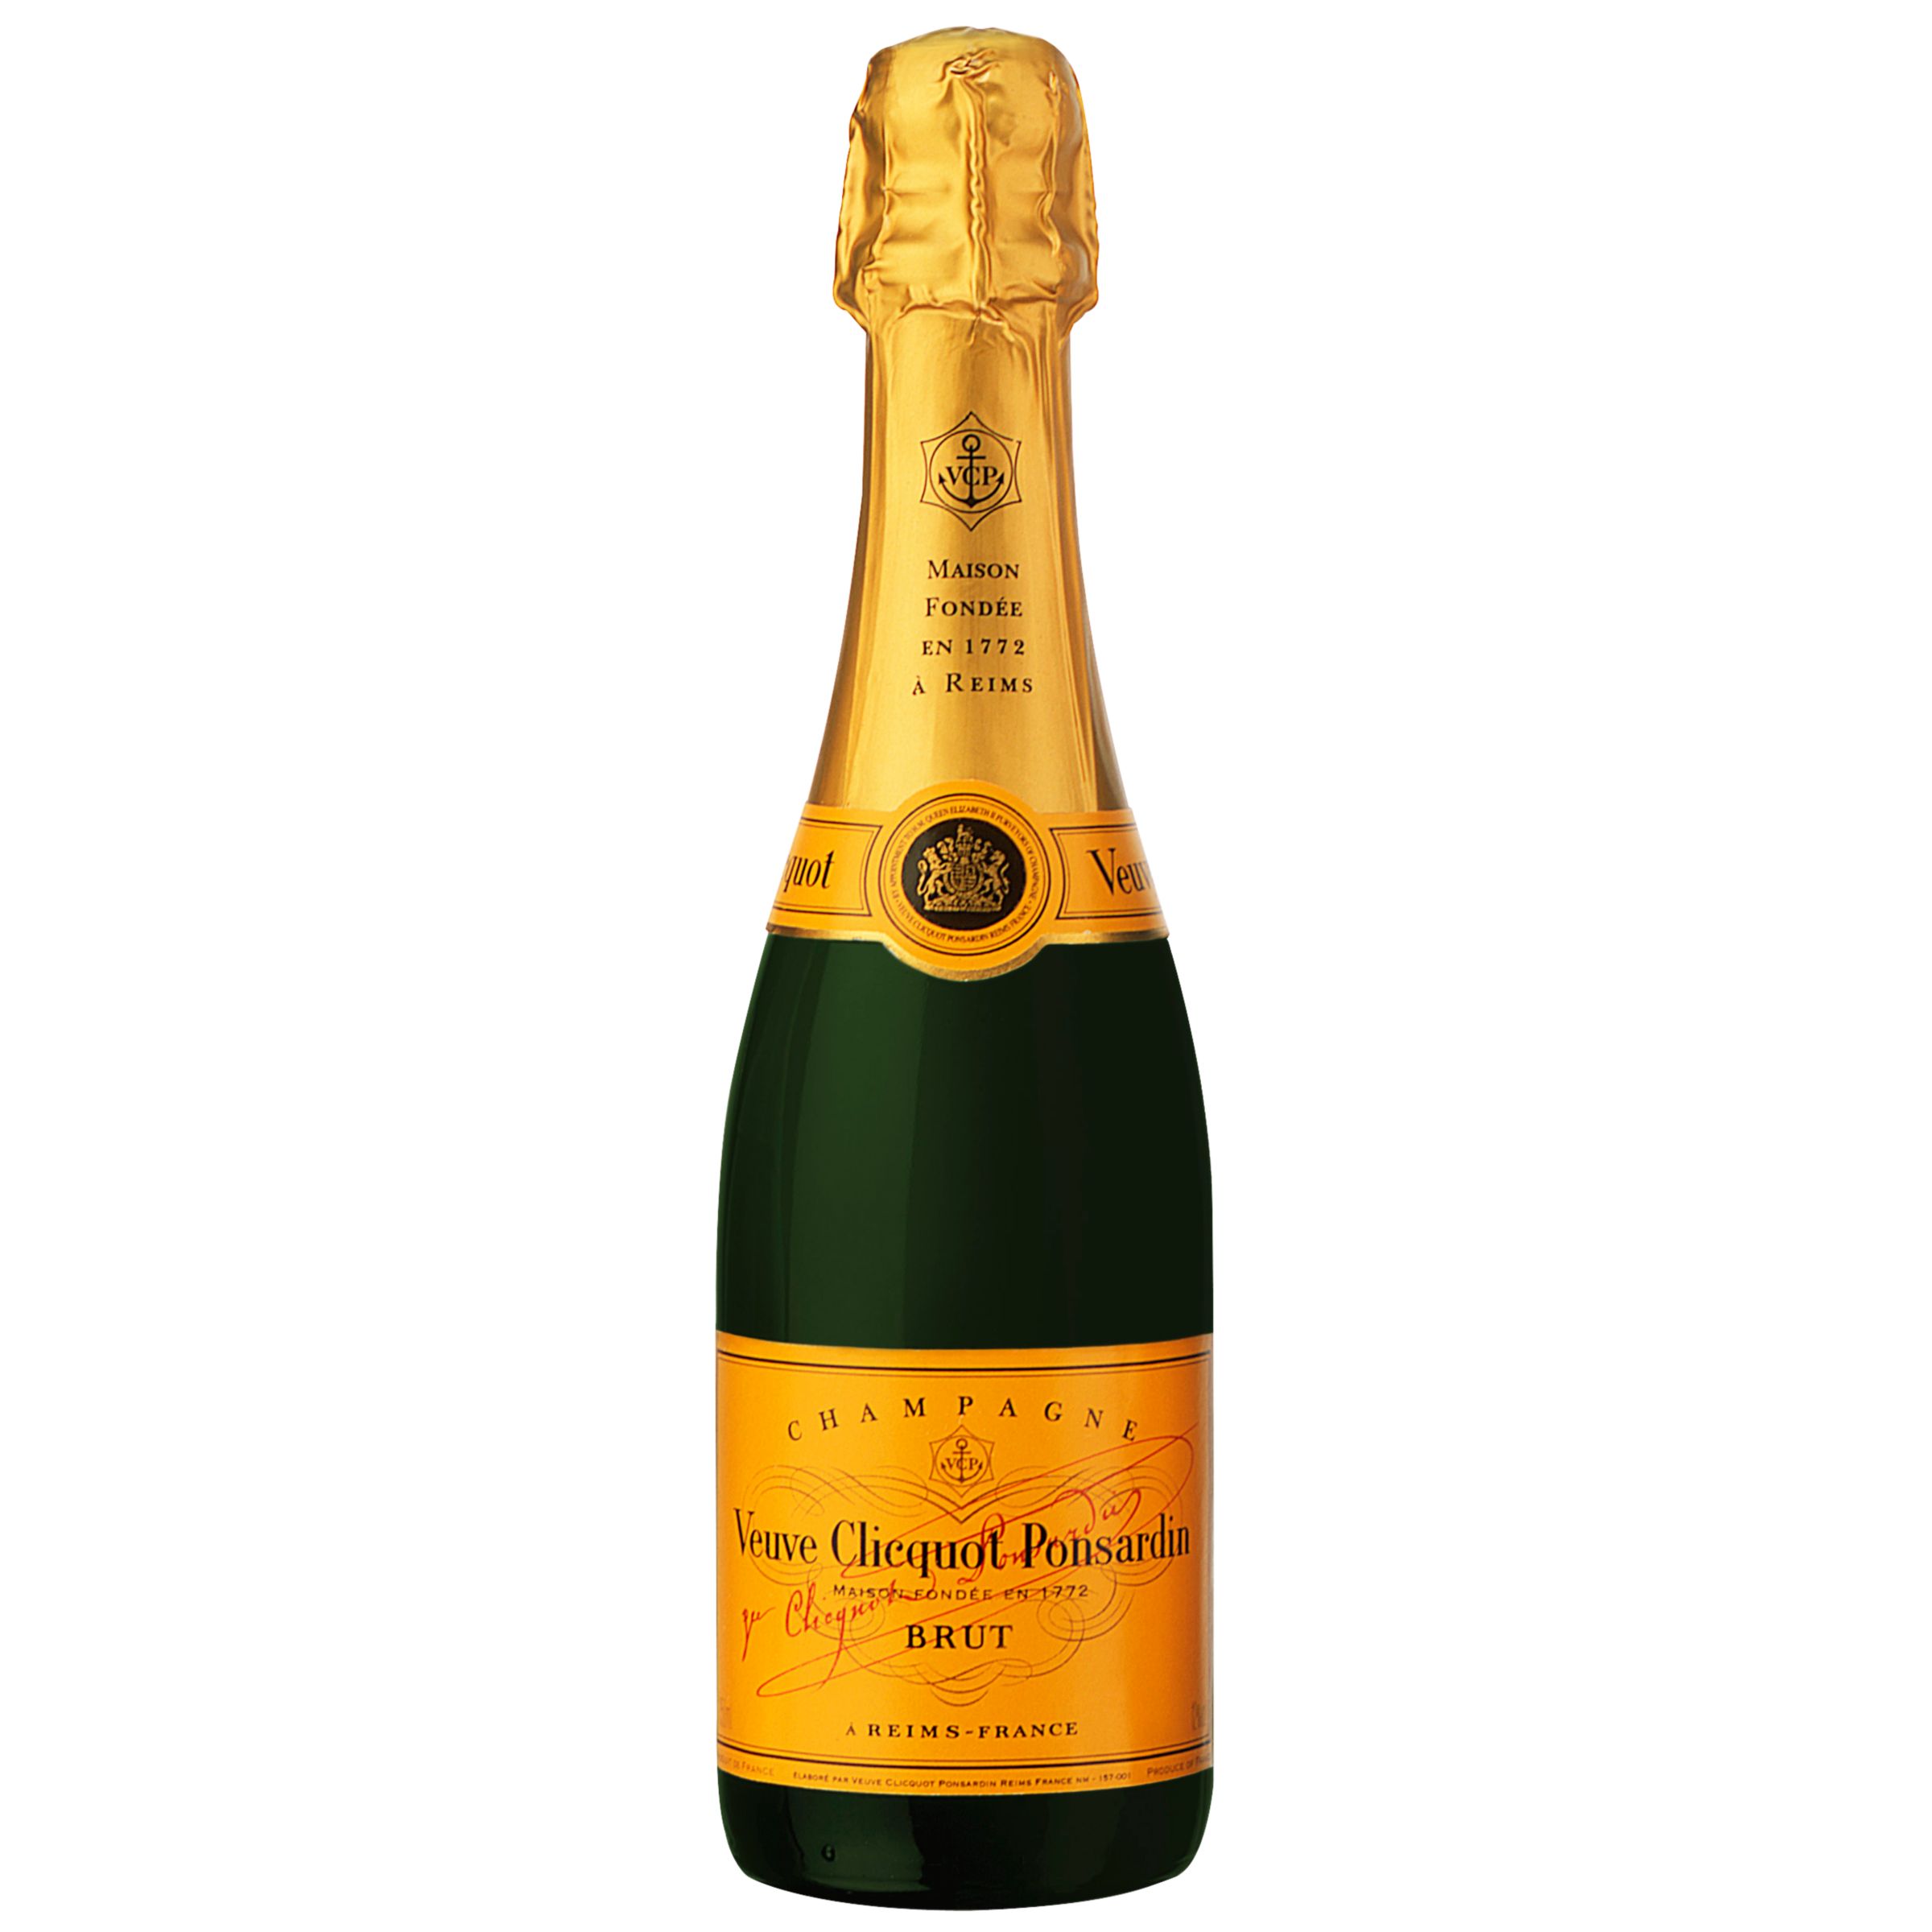 Veuve Clicquot NV Champagne, France, 37.5cl (half bottle) at John Lewis